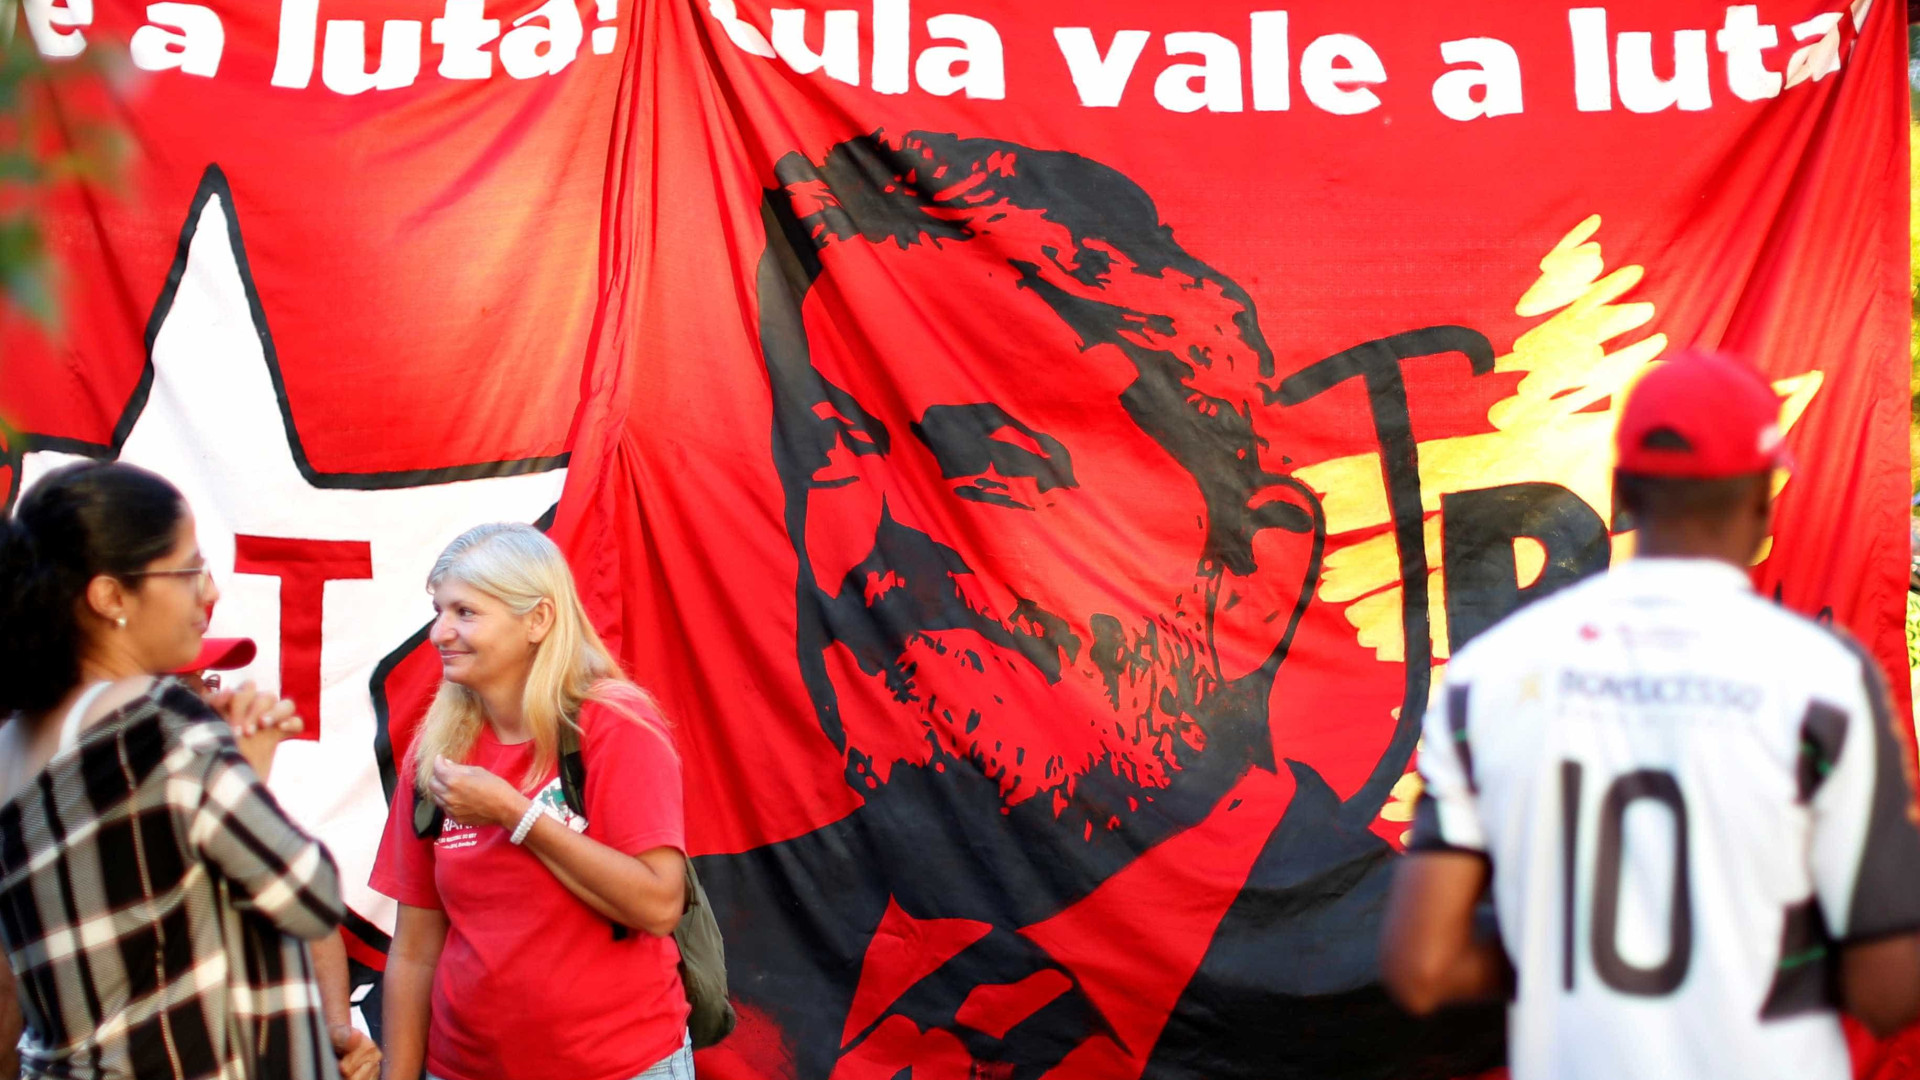 Manifestantes pró-Lula fazem ato em shopping de senador tucano; vídeo